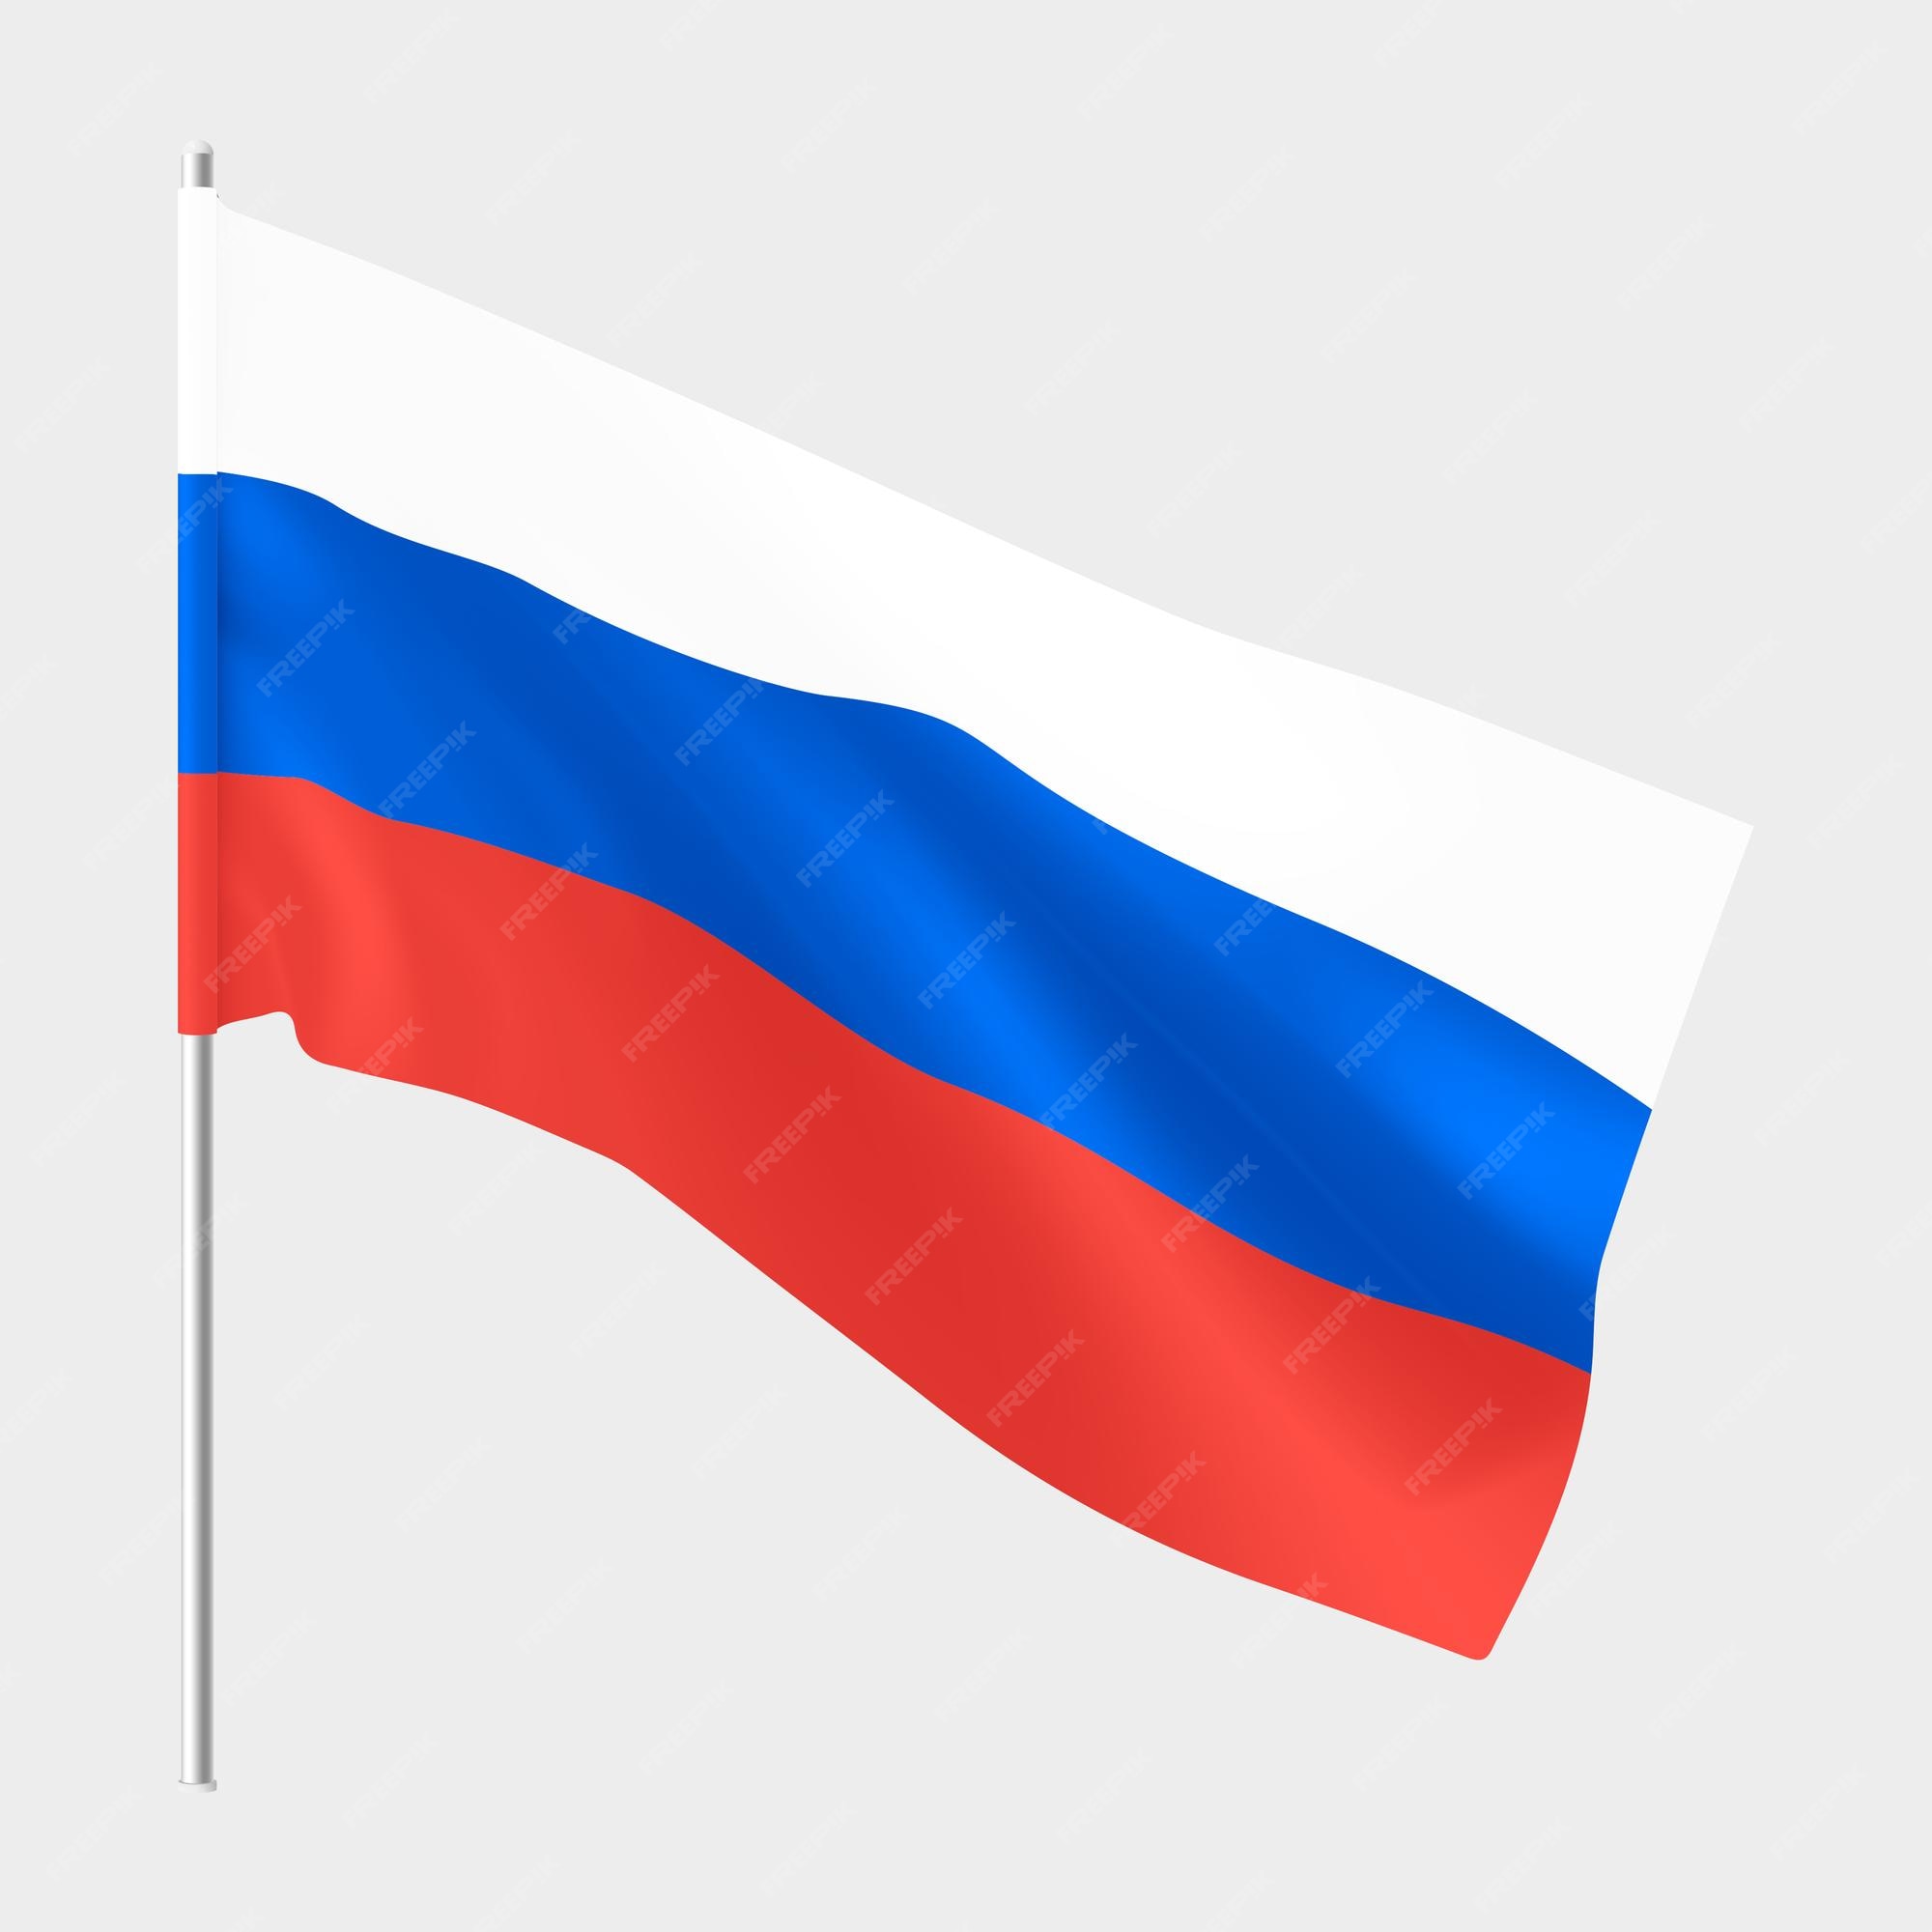 bandeira da federação russa - Fotos de arquivo #3319643